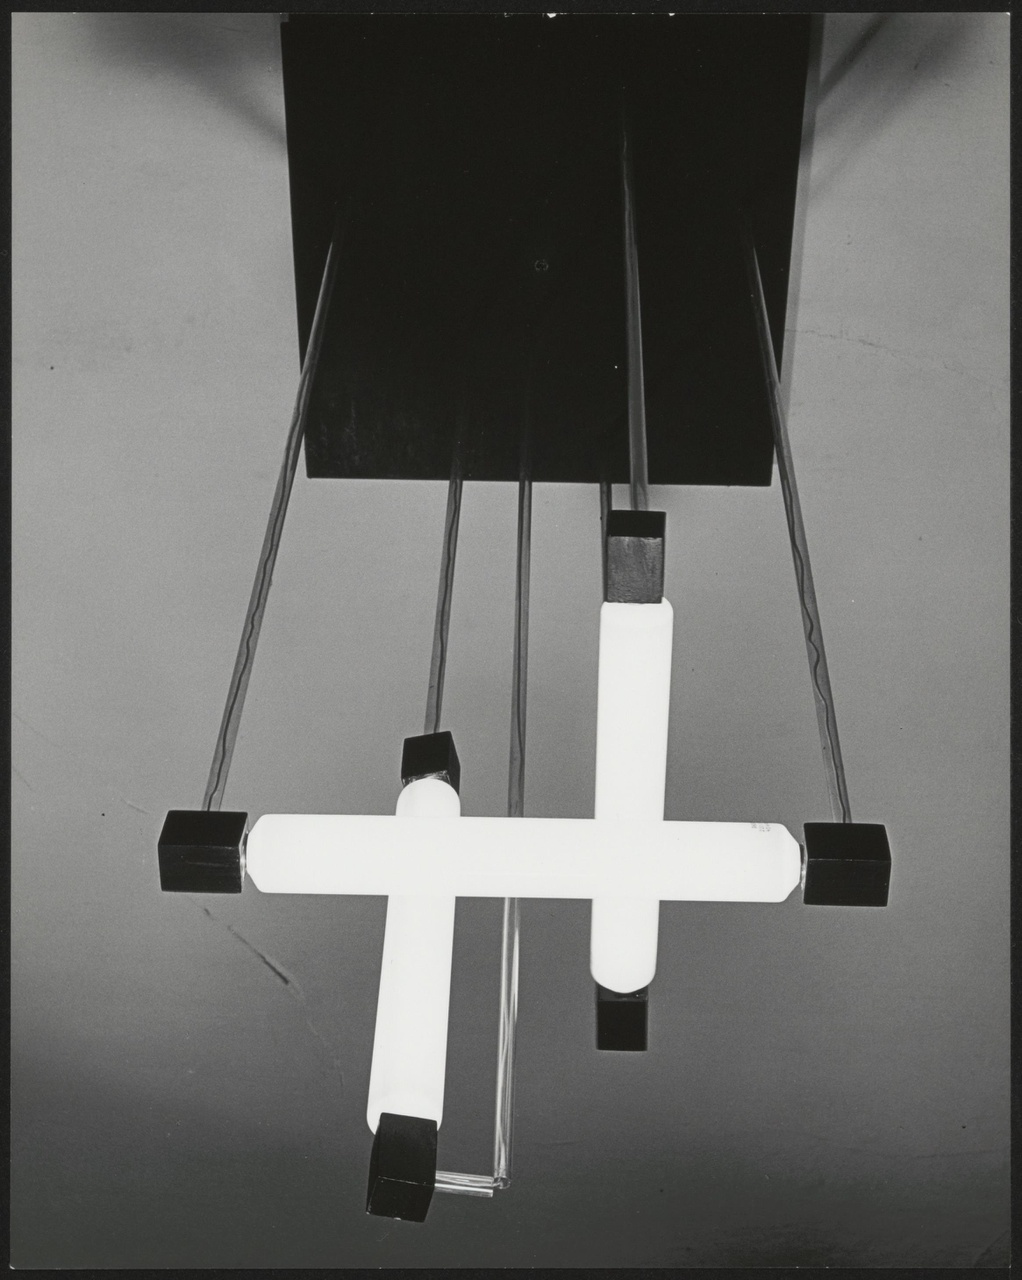 Afbeelding van hanglamp met 3 nuizen, van onderen met licht aan